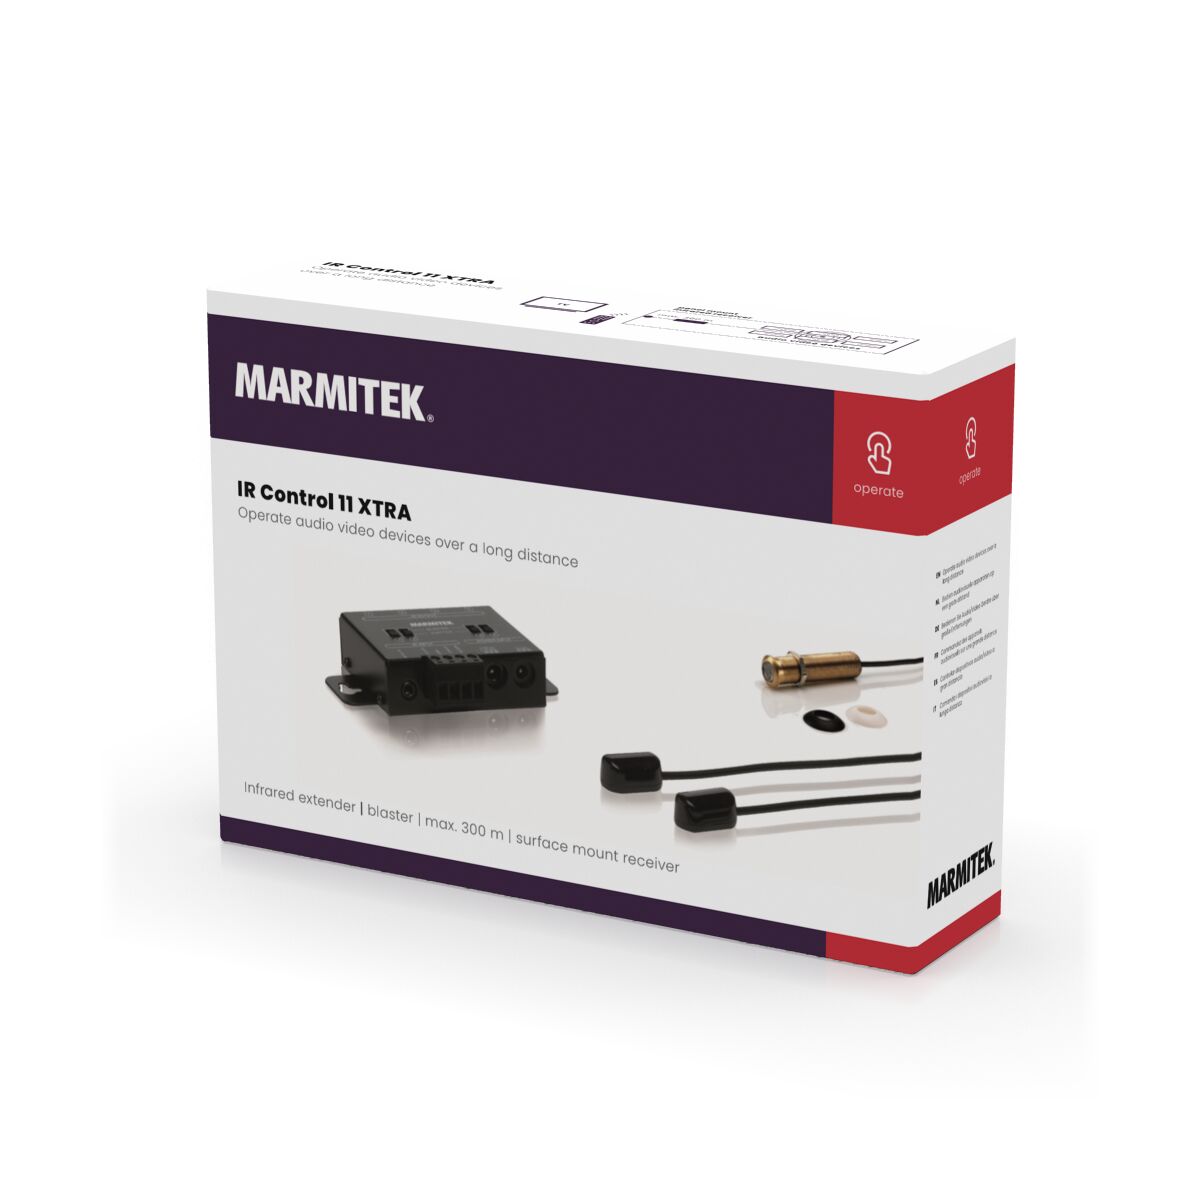 IR Control 11 XTRA - IR extender - 3D Packshot Image | Marmitek